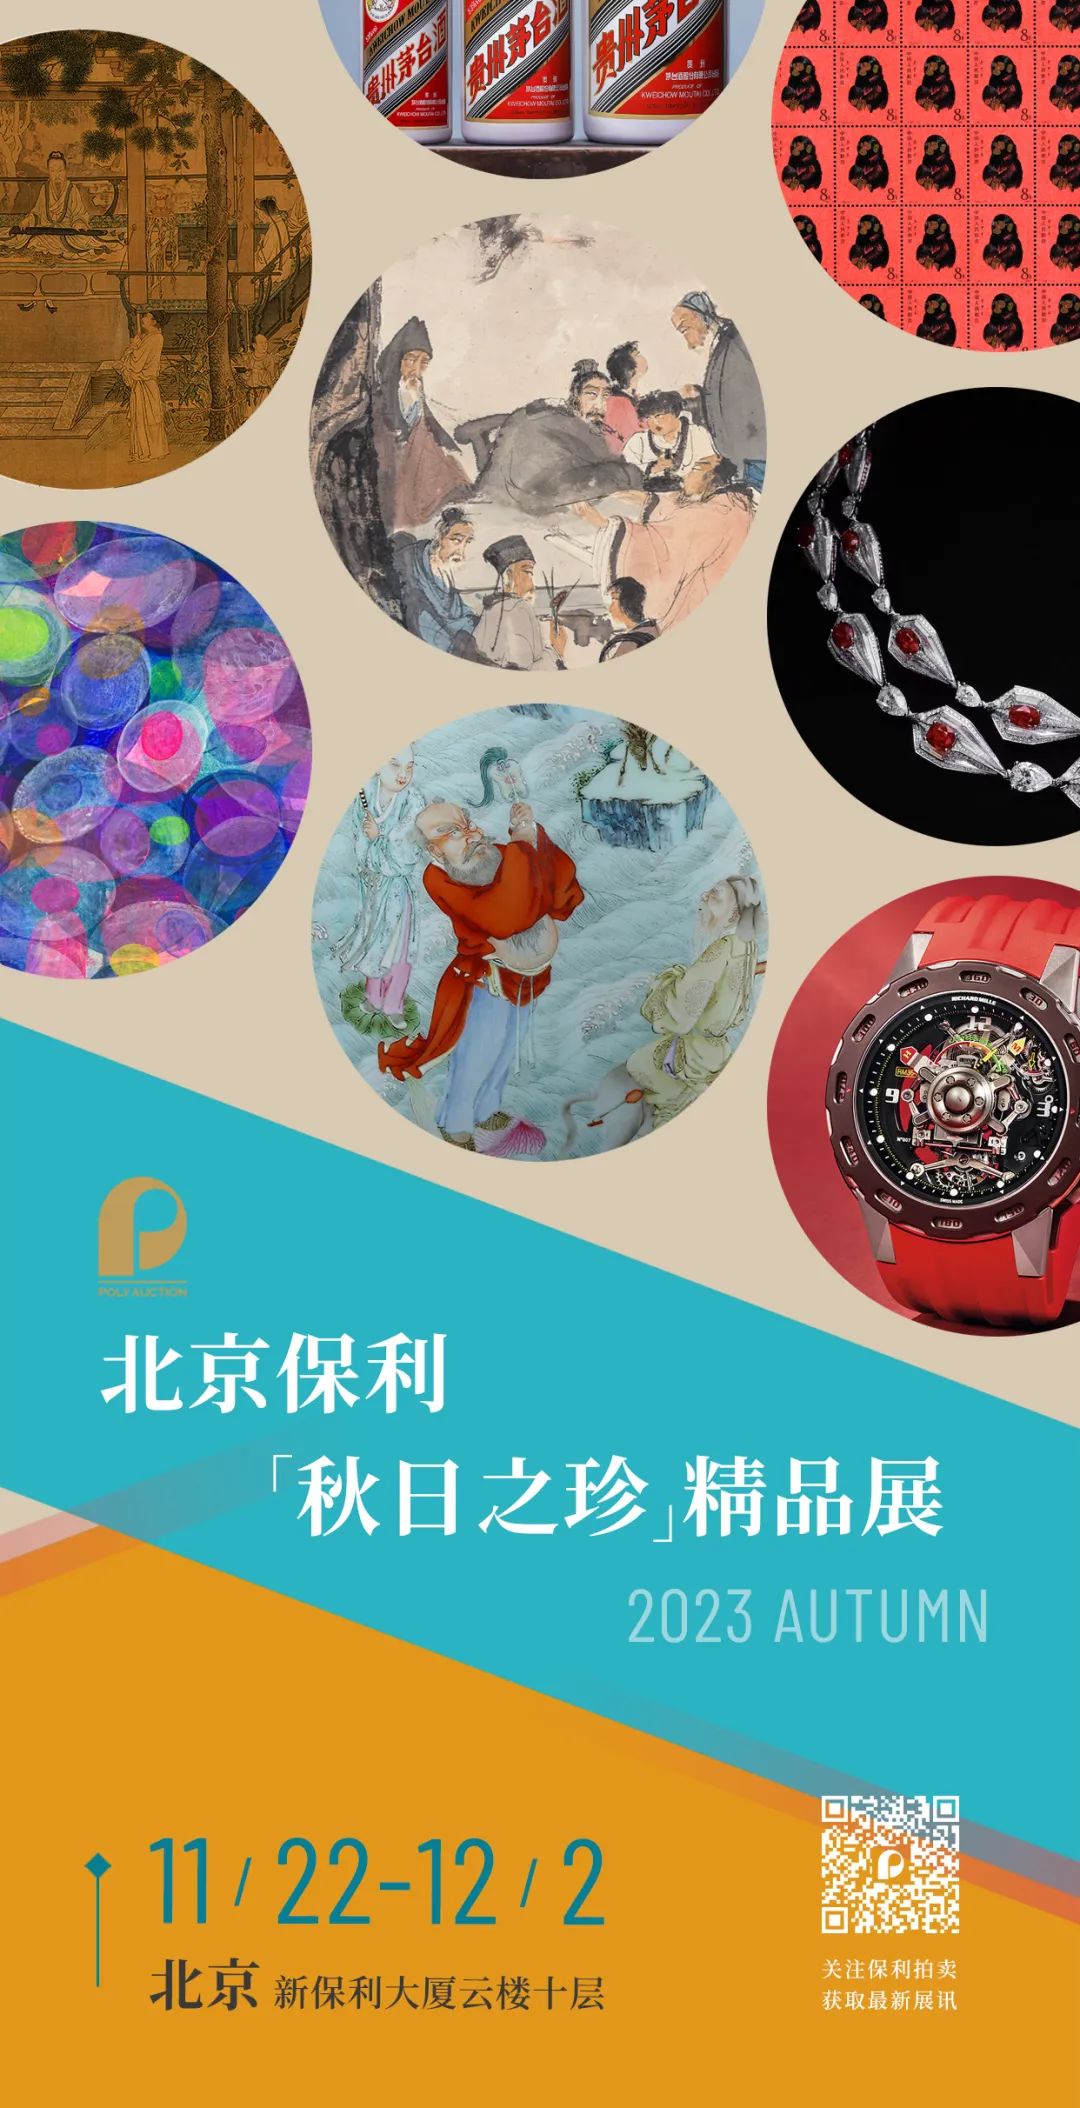 北京保利拍卖丨“秋日之珍”精品展北京站即将开展